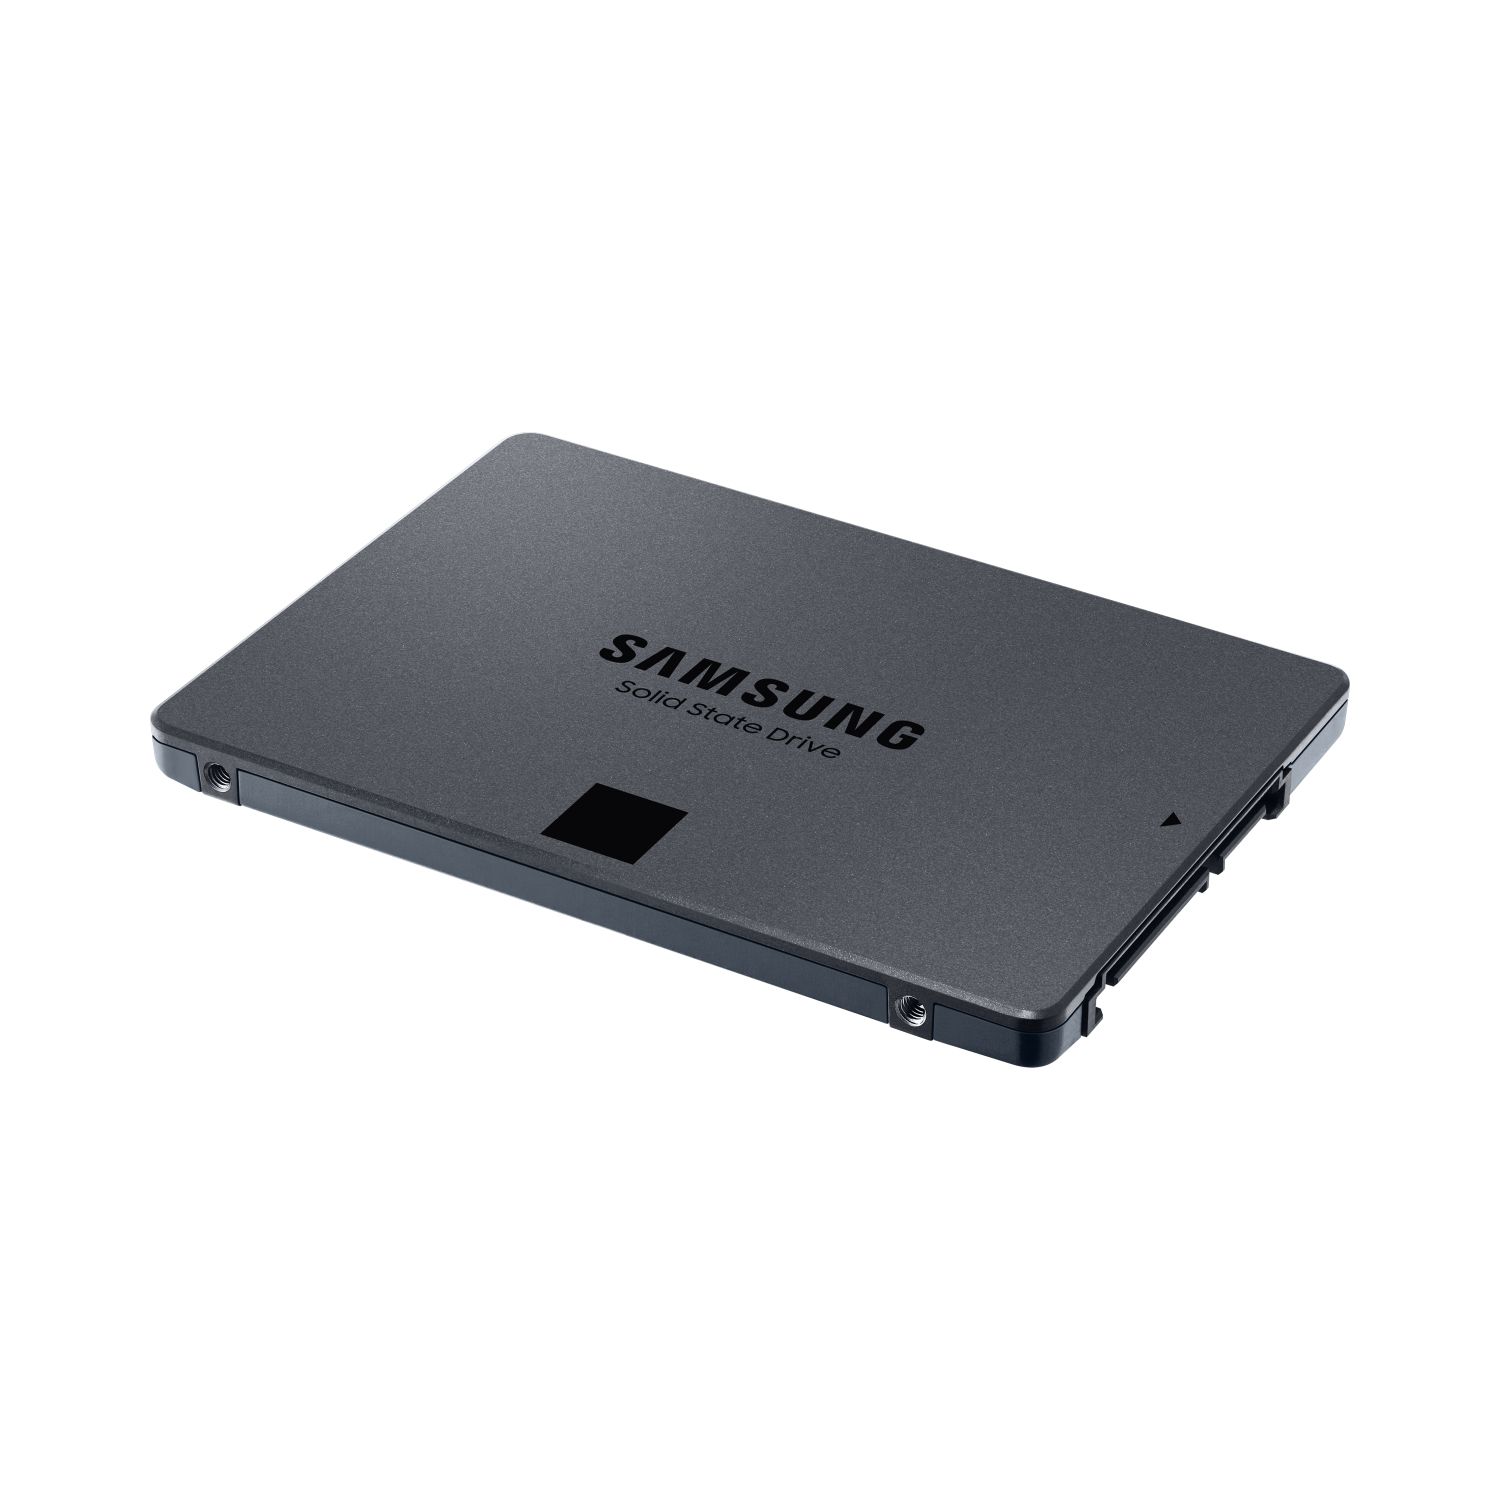 MZ-77Q4T0BW - SSD Samsung 870 QVO 2.5